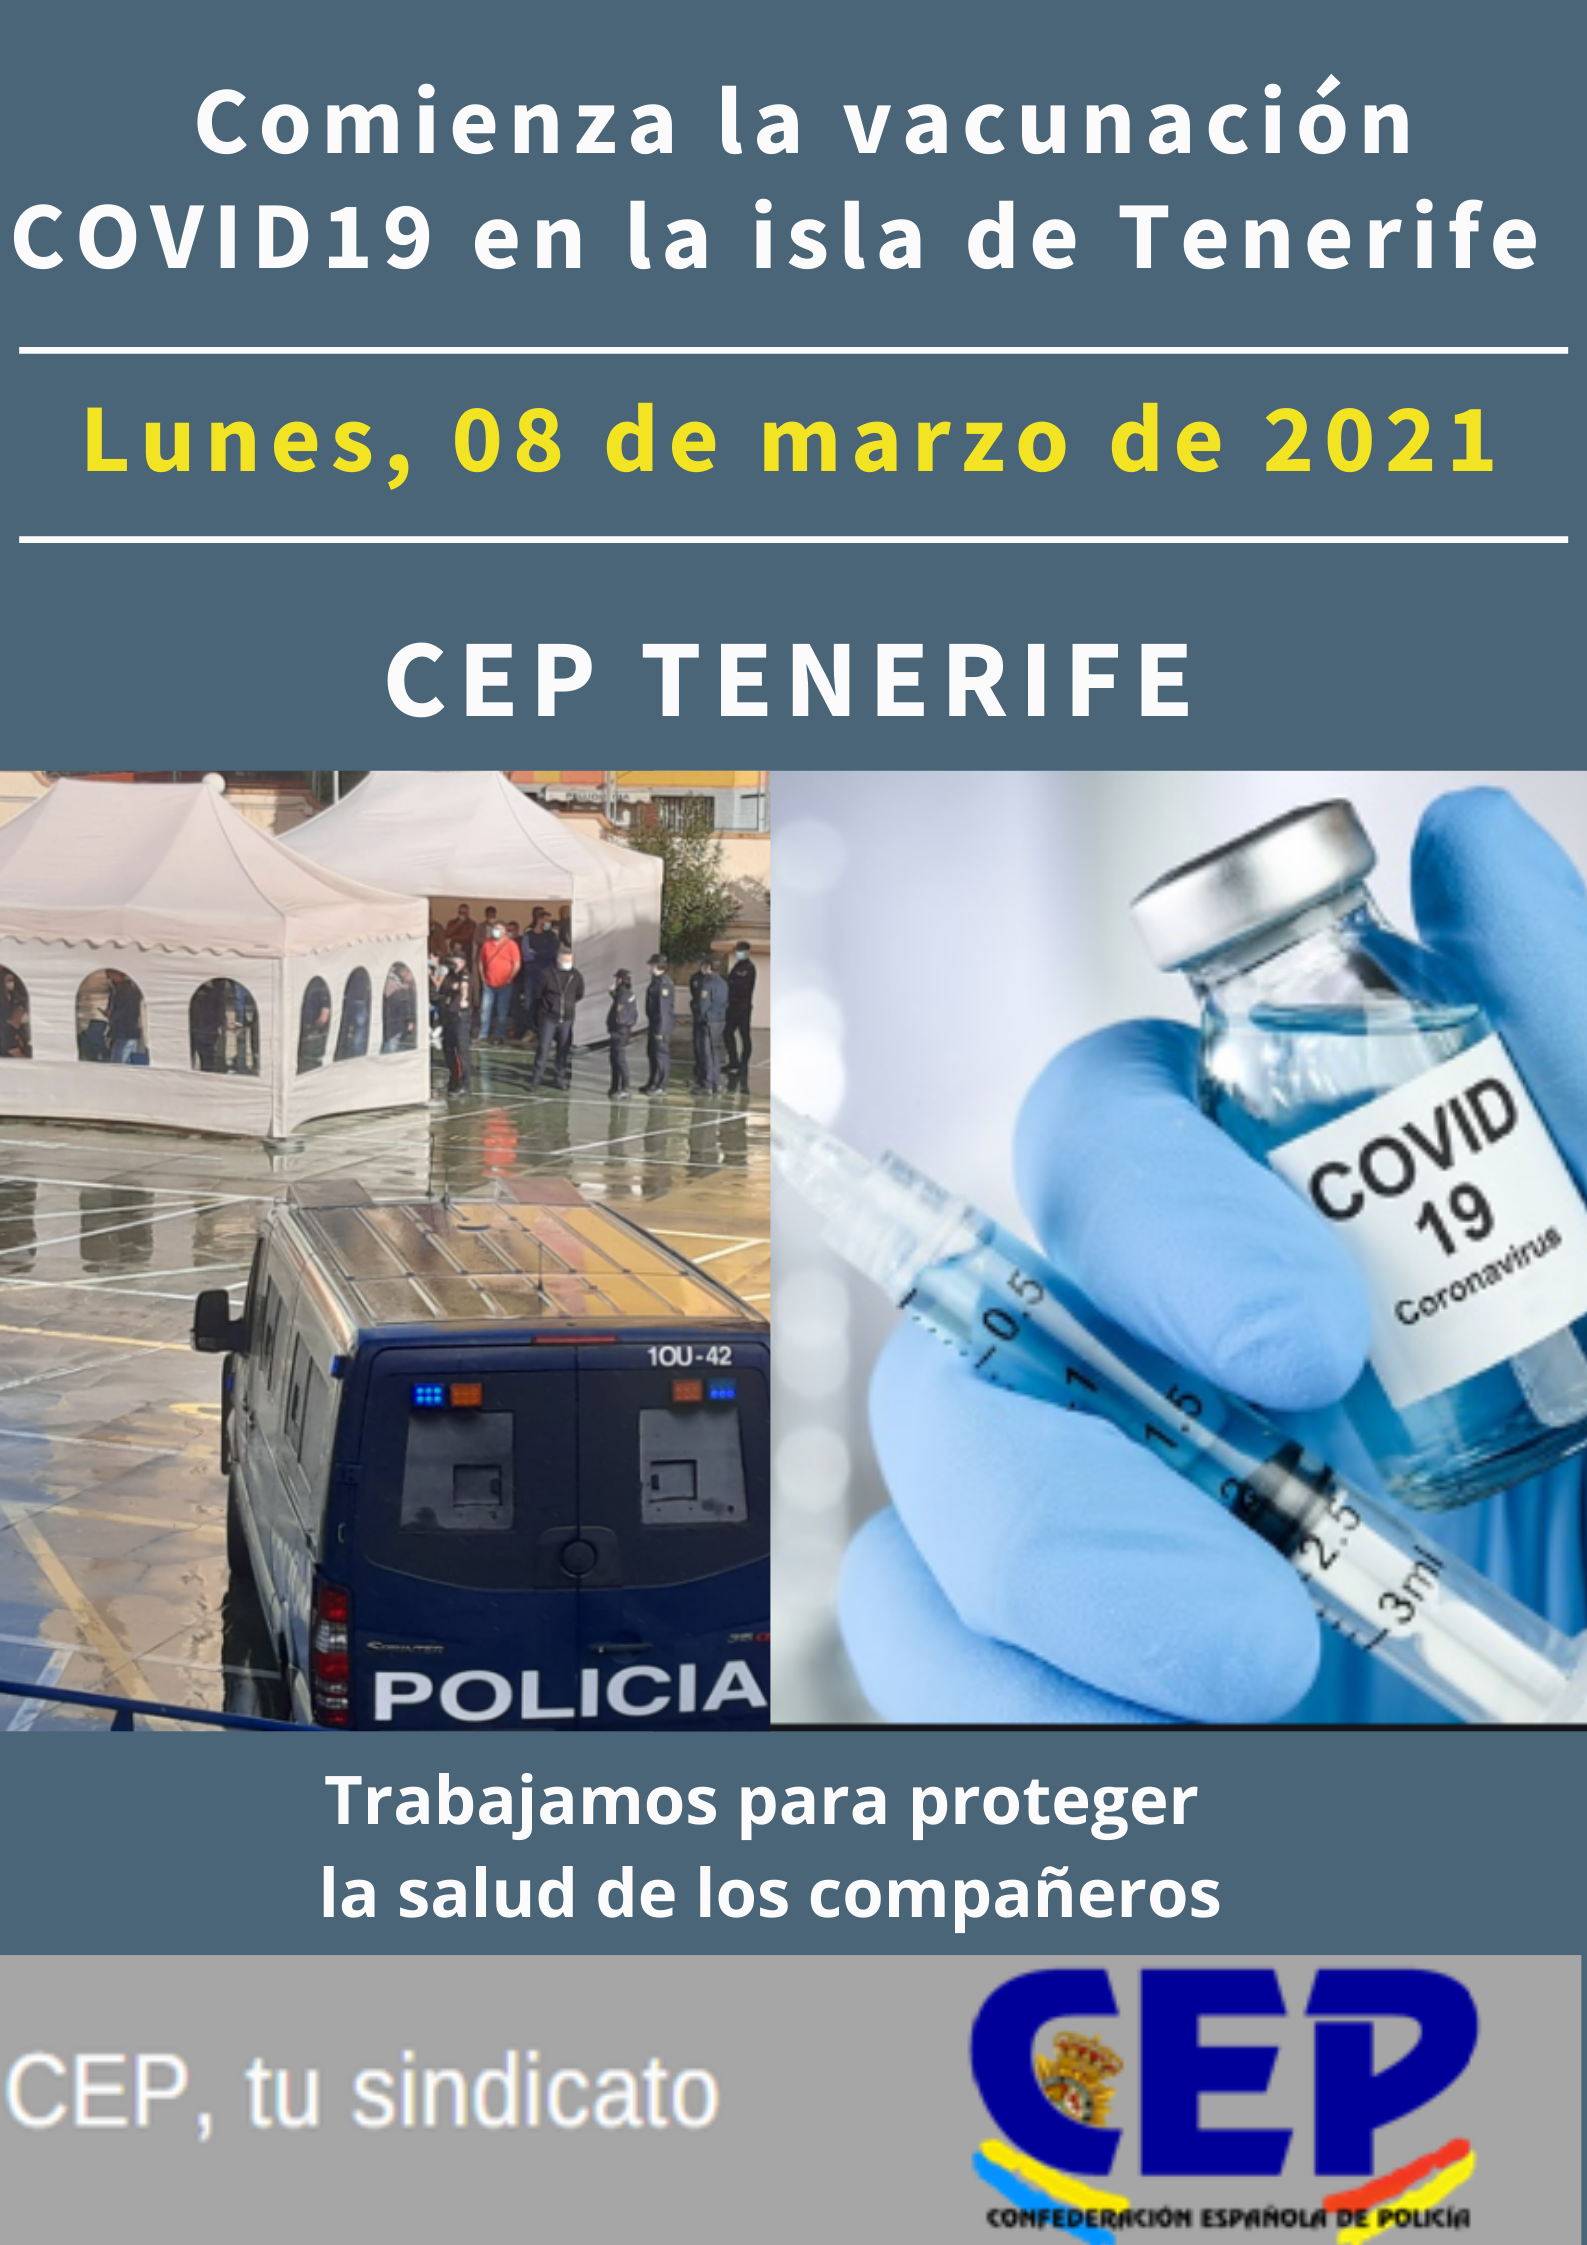 Comienza vacunación COVID19 en Tenerife, hoy lunes 08 de marzo